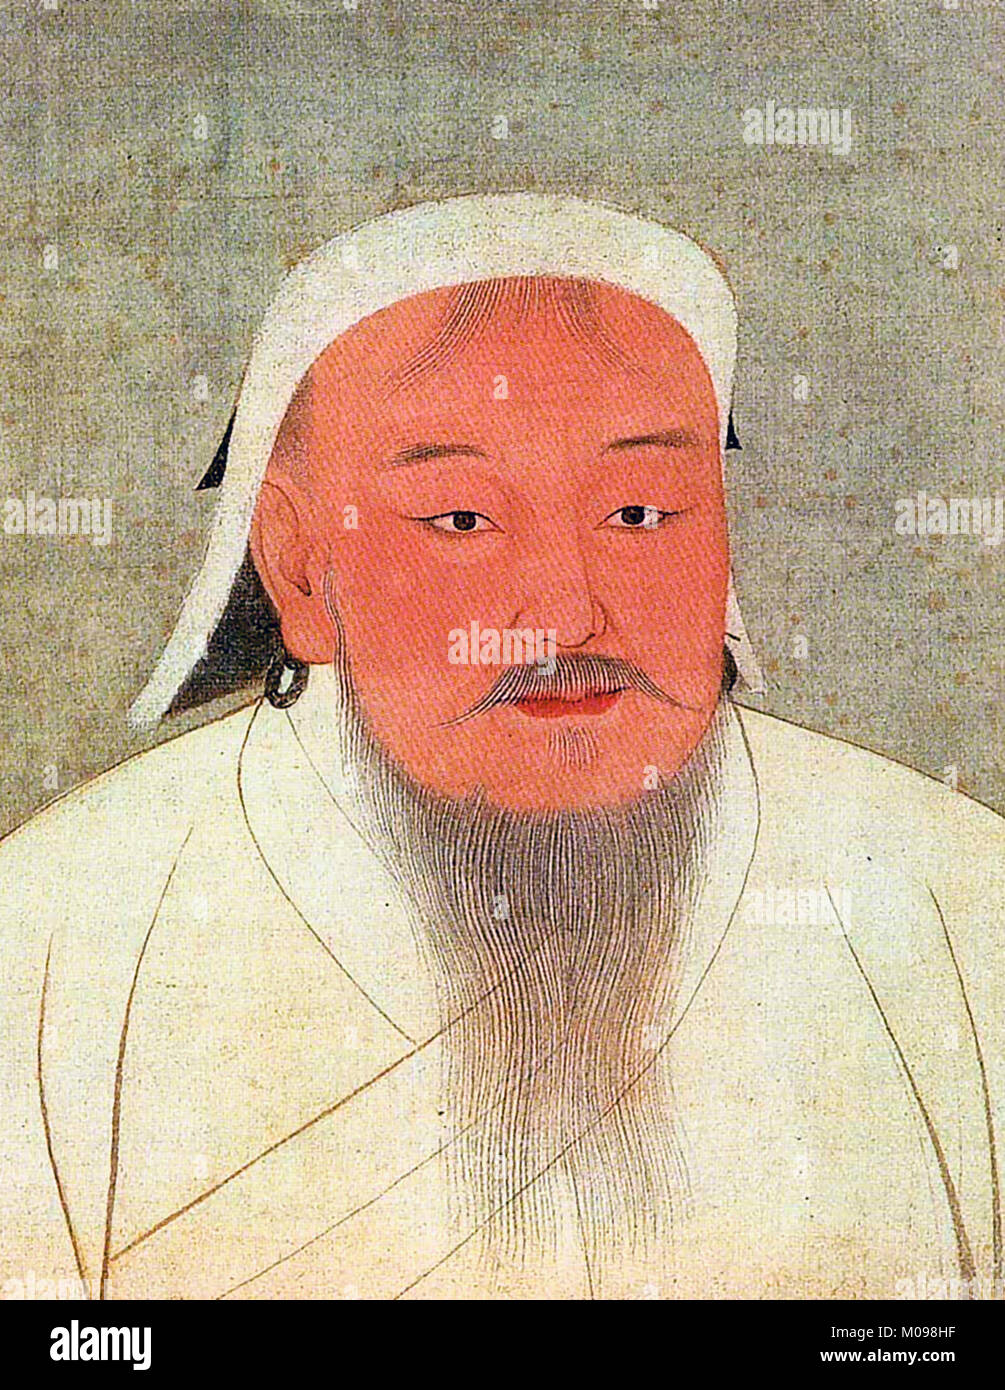 Gengis Khan (c.1162-1227), portrait du fondateur de l'Empire mongol, peinture et encre sur soie, 14e siècle Banque D'Images